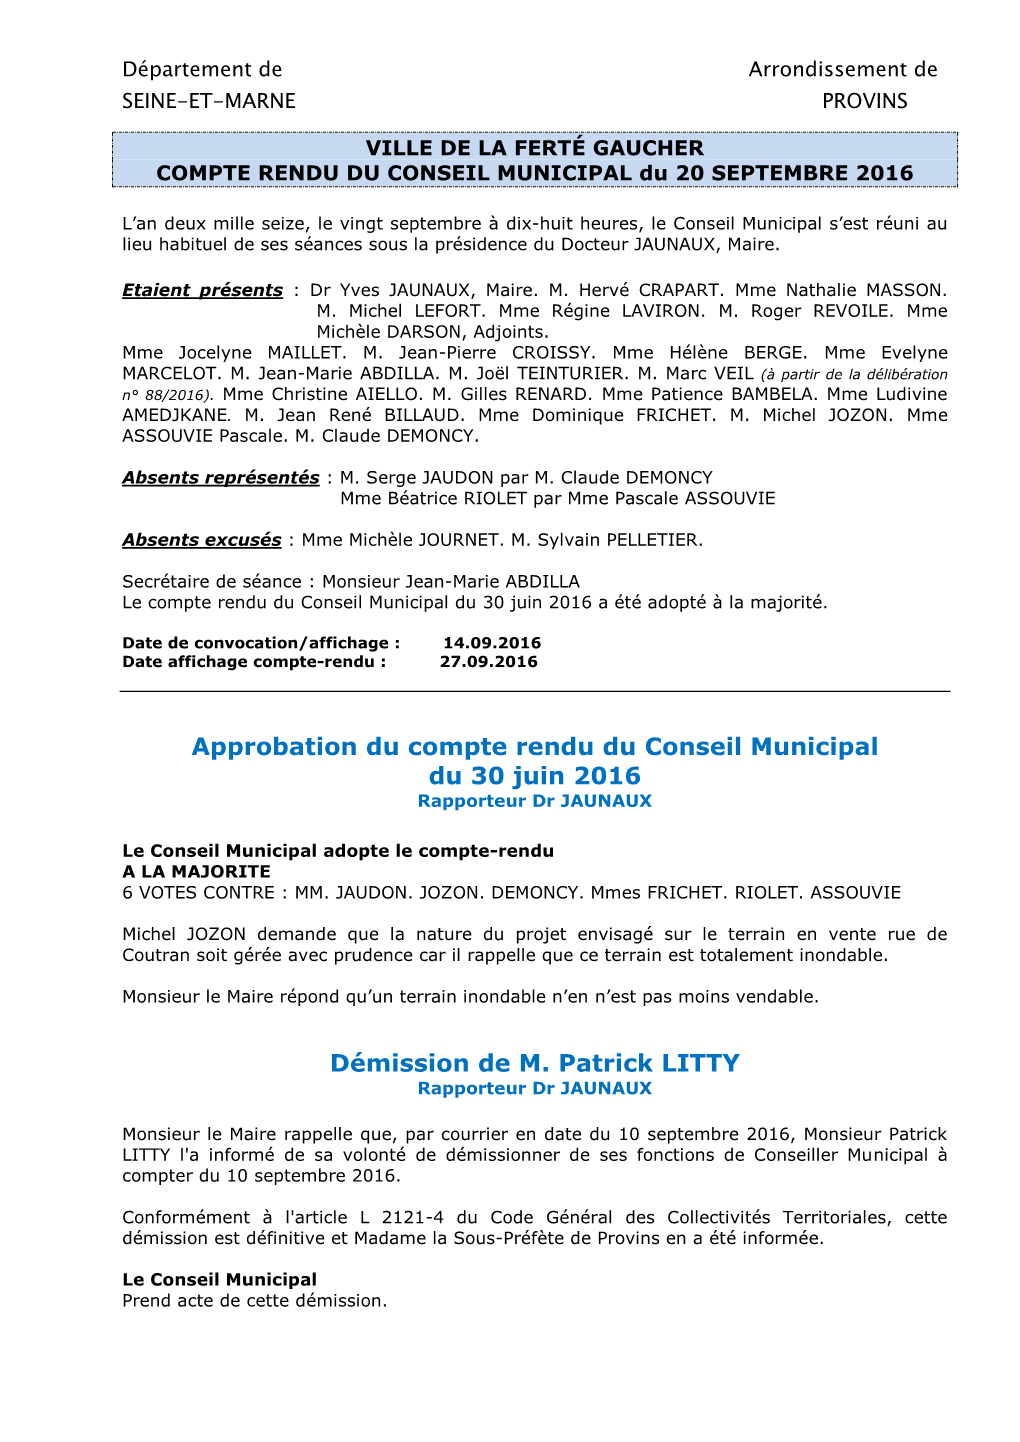 Approbation Du Compte Rendu Du Conseil Municipal Du 30 Juin 2016 Démission De M. Patrick LITTY